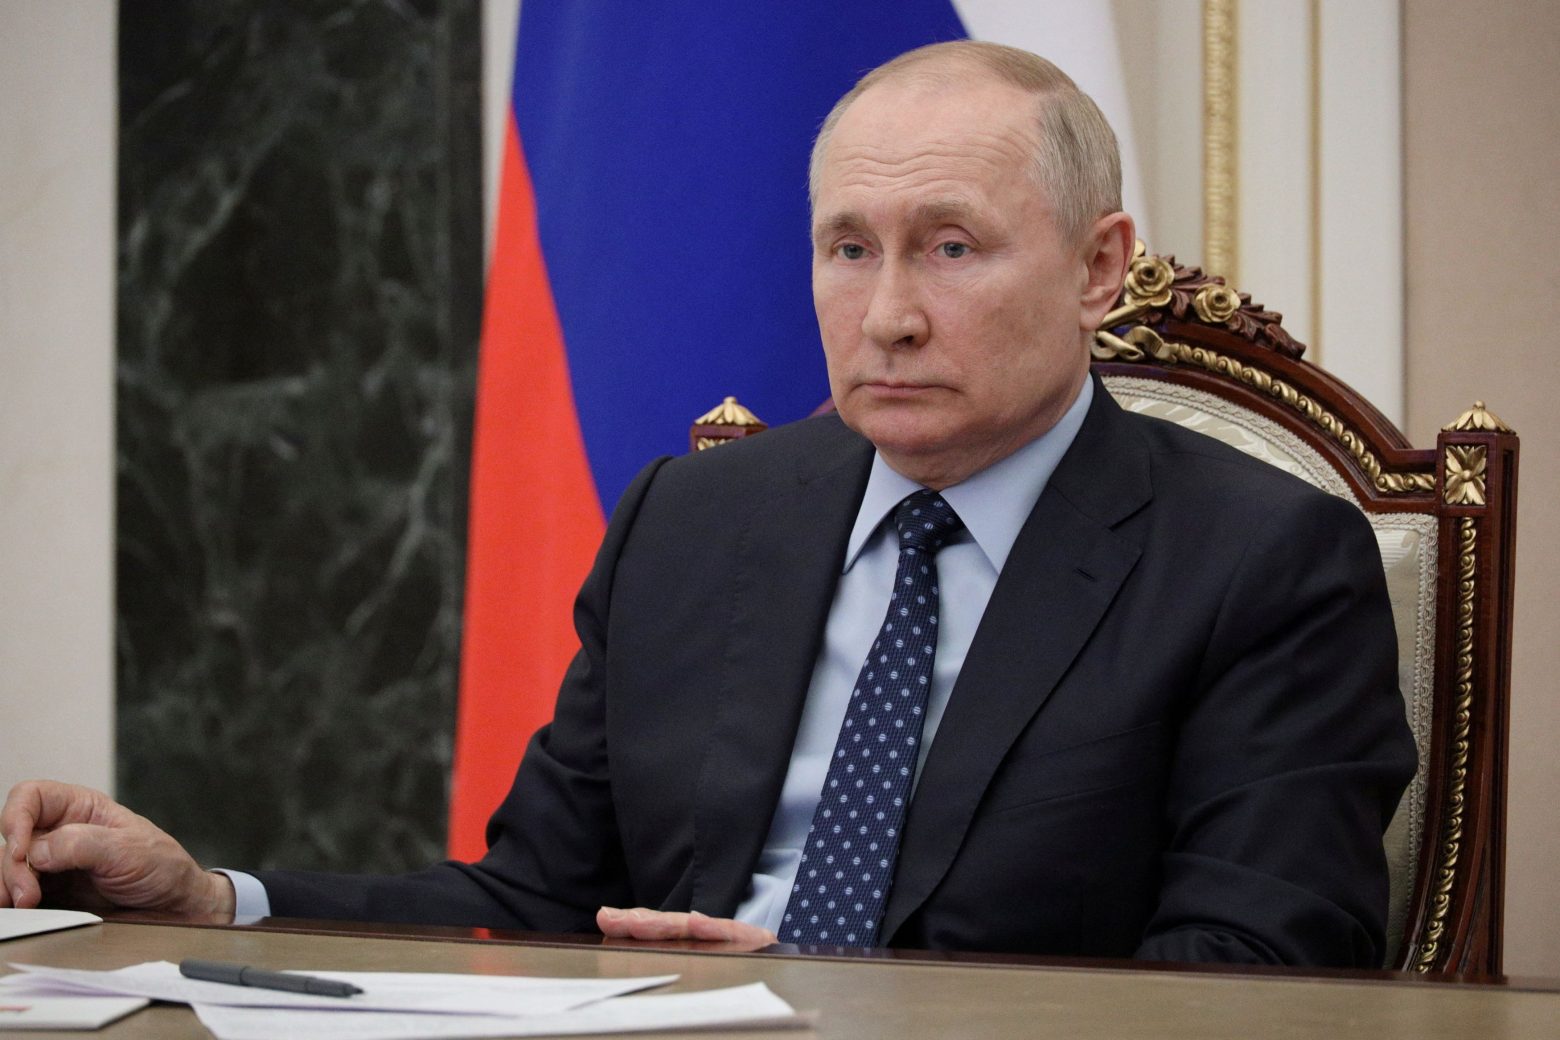 Ο Πούτιν θεωρεί τον πόλεμο αφετηρία ενός πολυπολικού κόσμου